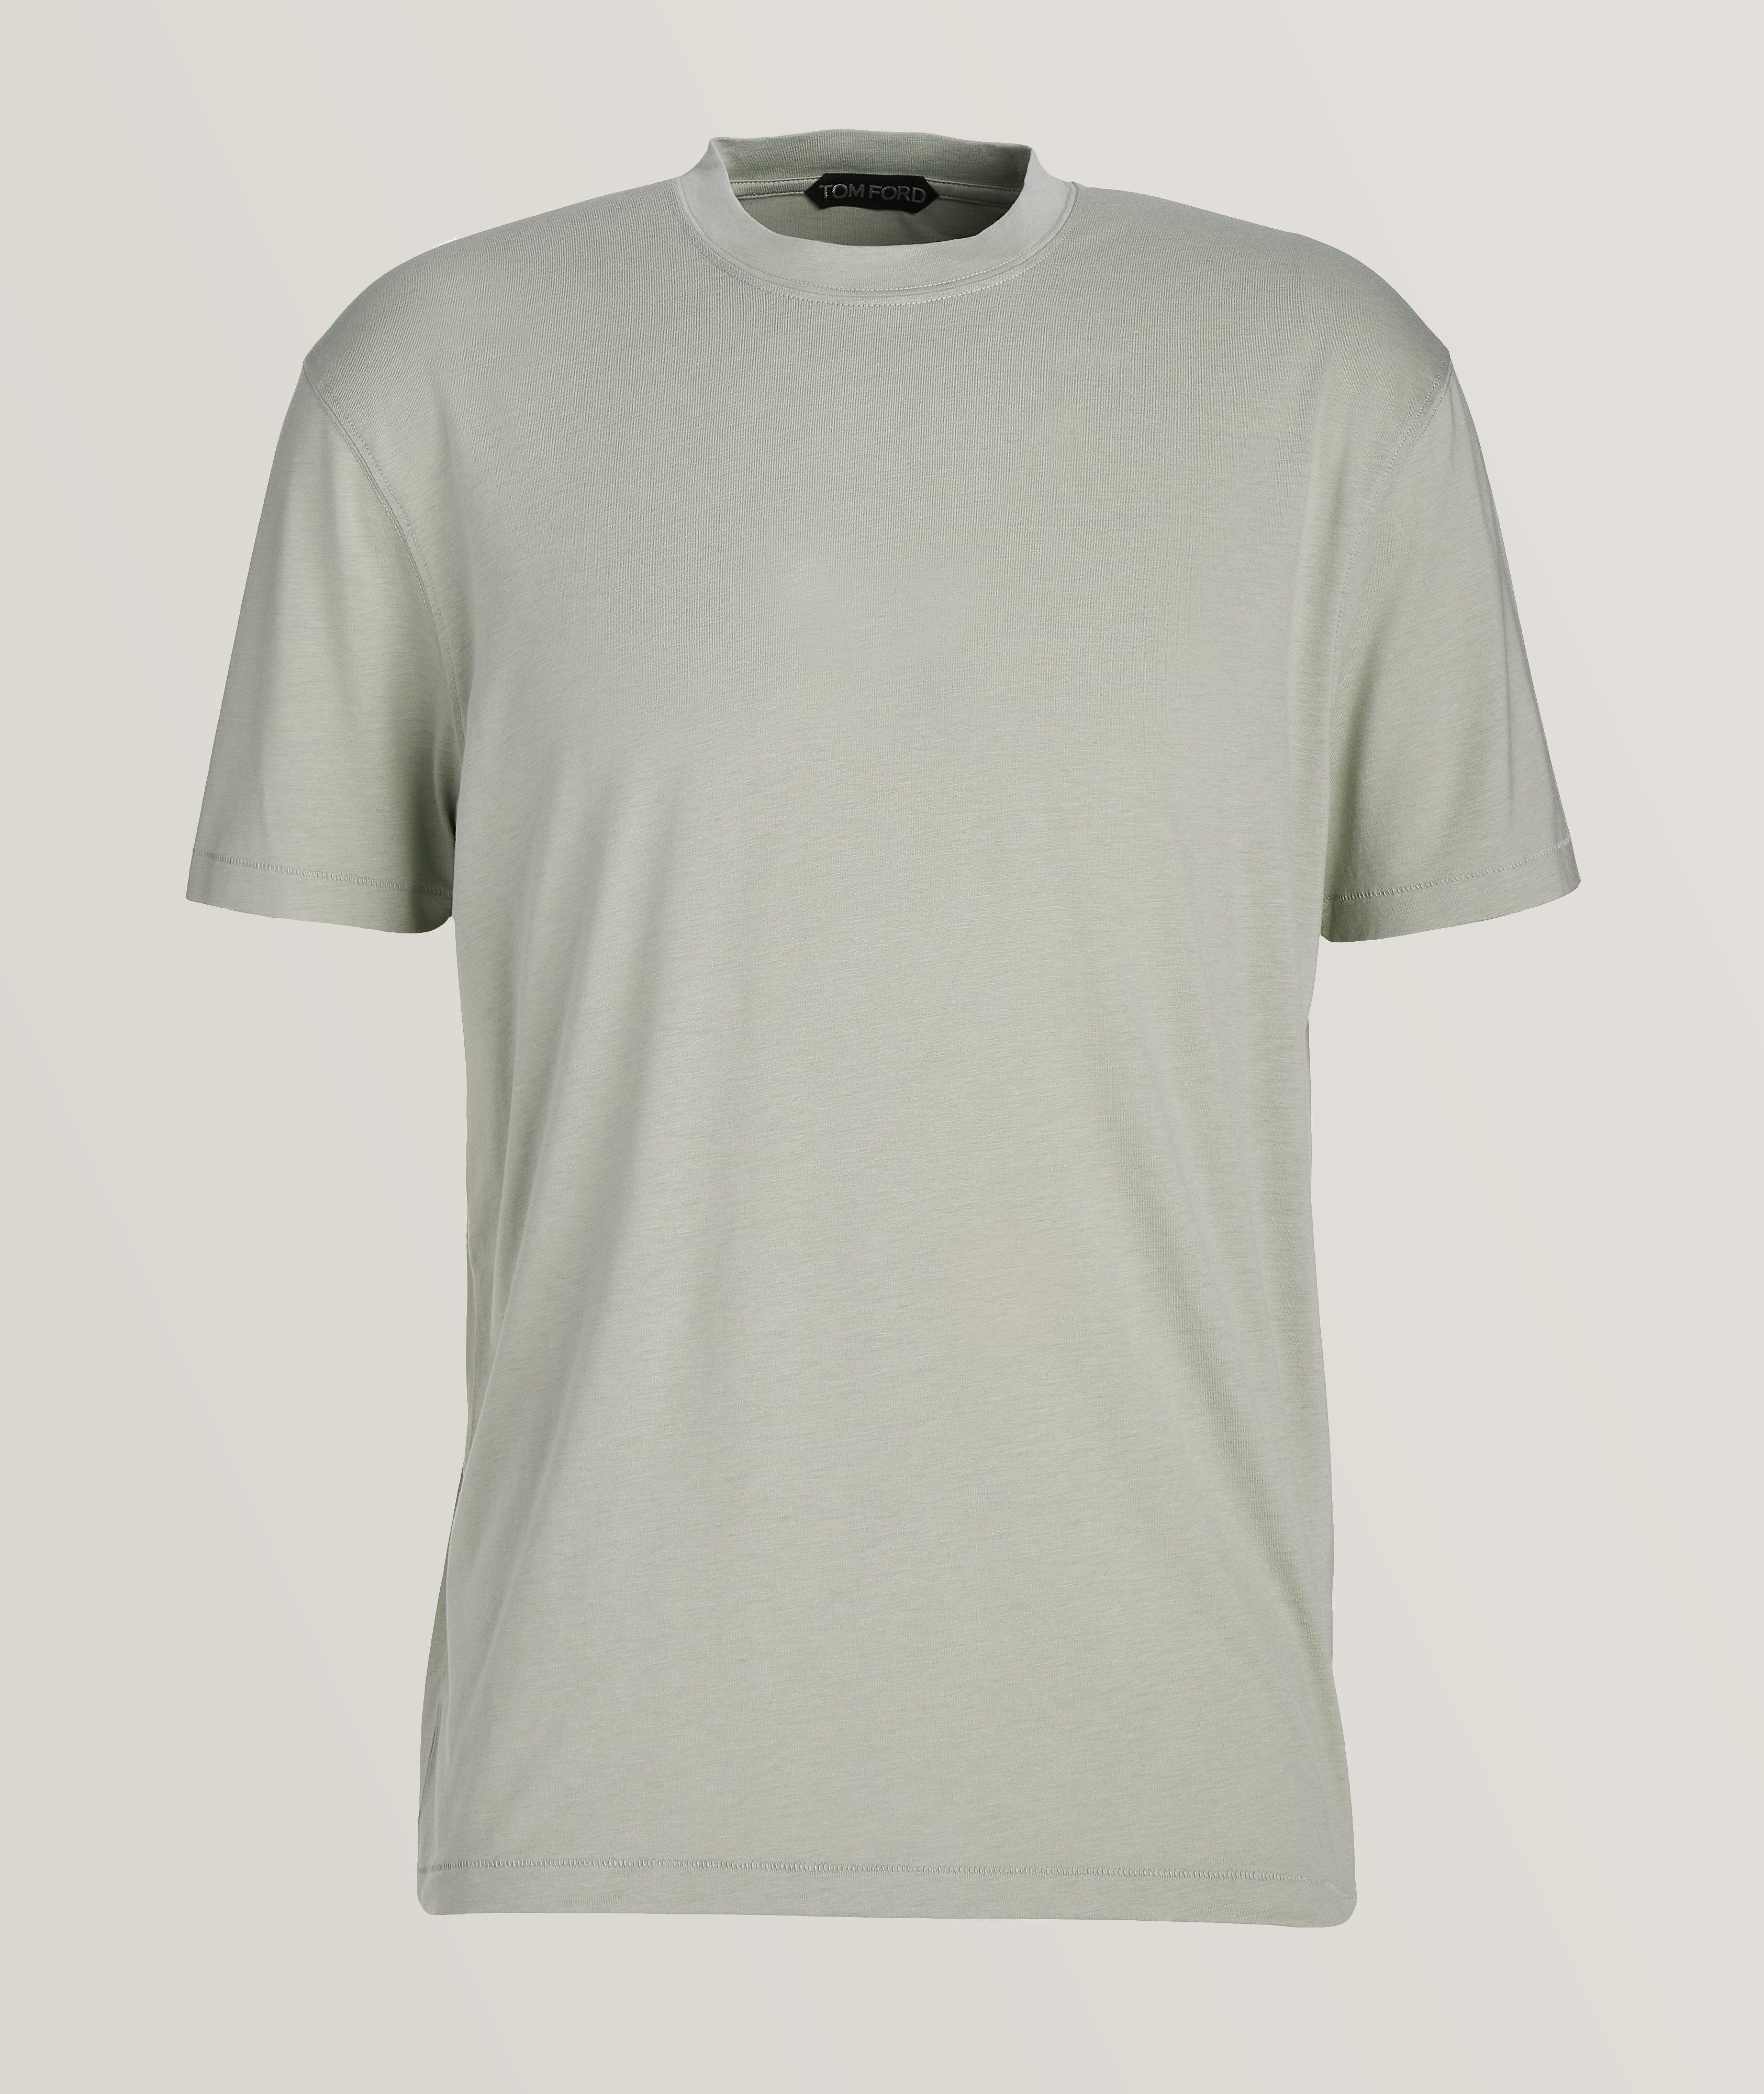 Cotton Blend Mélange Crewneck T-Shirt image 0